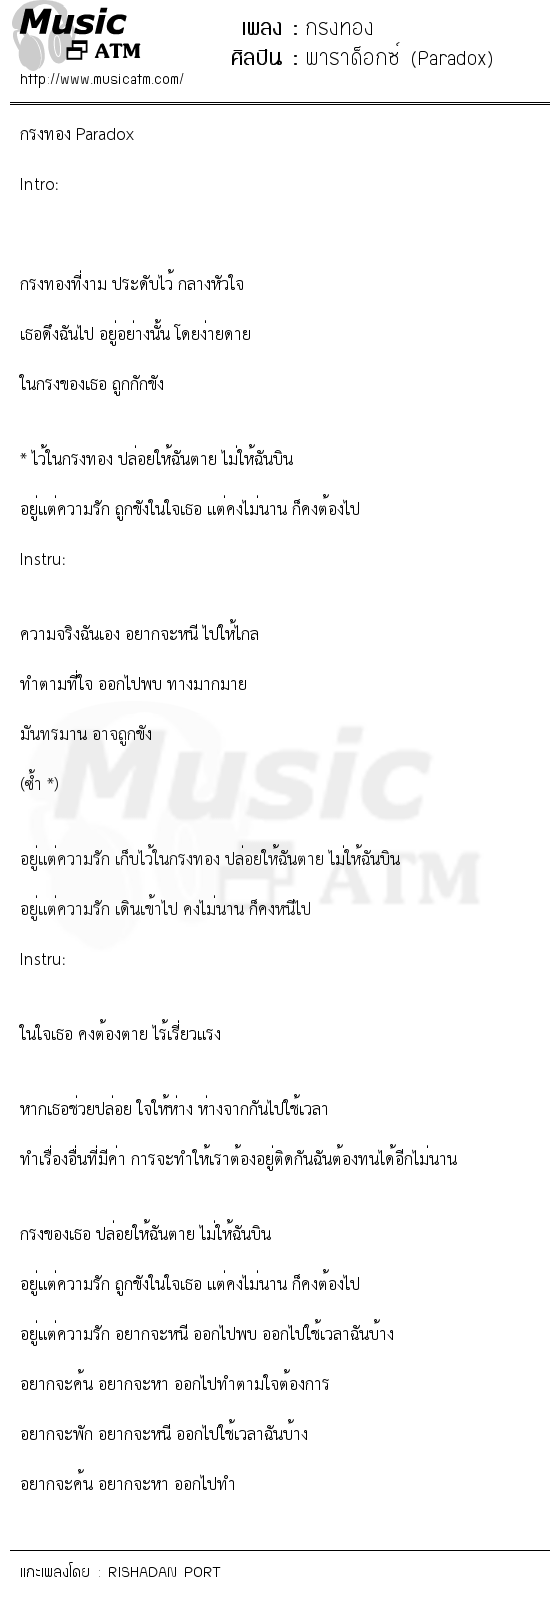 เนื้อเพลง กรงทอง - พาราด็อกซ์ (Paradox) | เพลงไทย